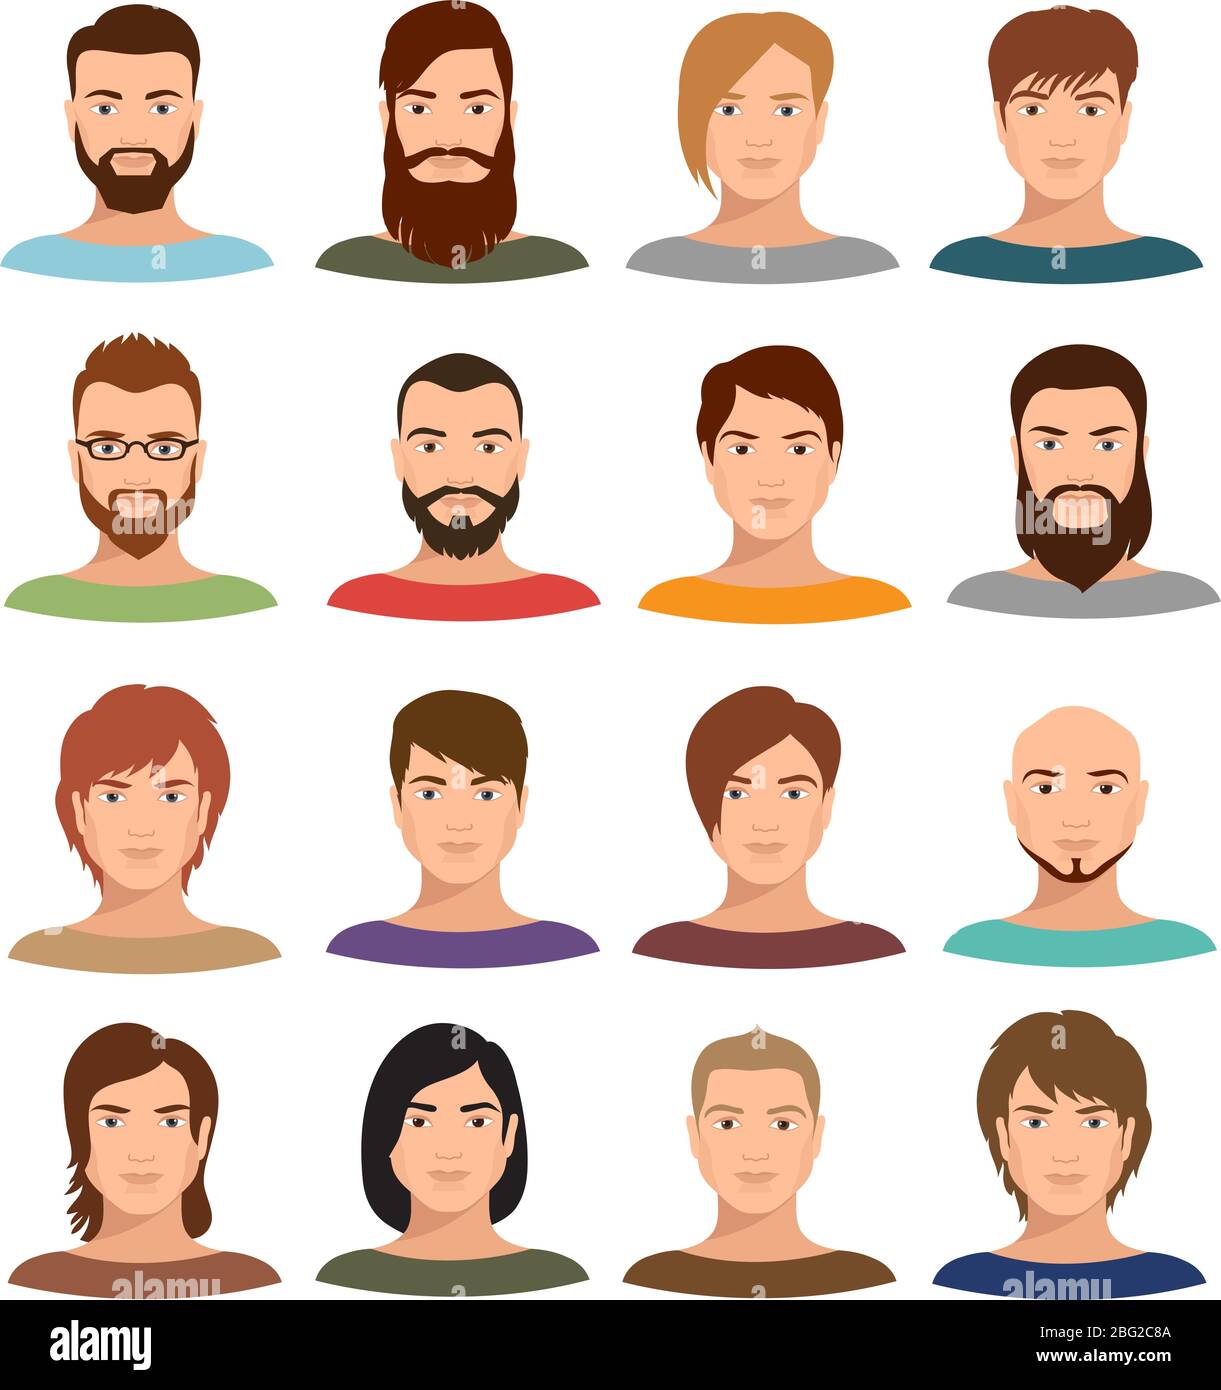 Erwachsene Männer Porträts Vektorsammlung. Internet-Profil mans Cartoon Gesichter. Benutzerprofil Mensch männlich Avatar, soziales Porträt Gesicht Illustration Stock Vektor